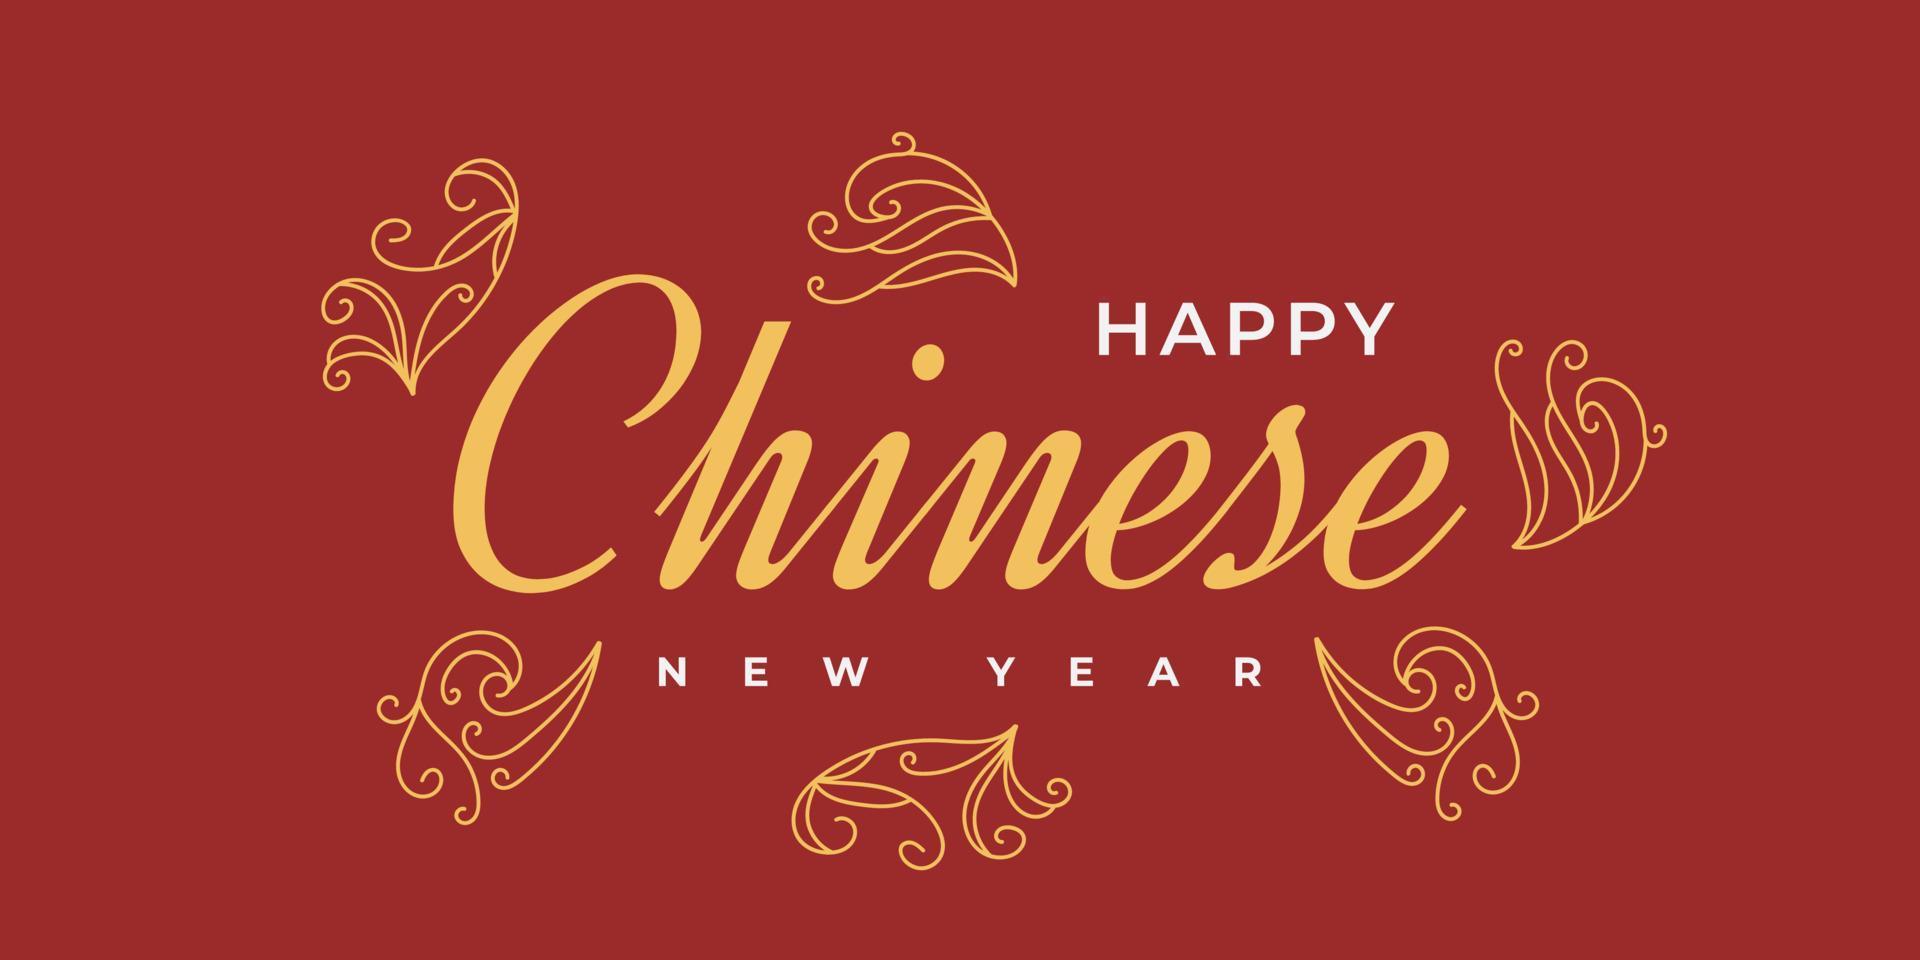 chinesisches neujahrsgrußbanner oder plakat mit blumenillustration lokalisiert auf rotem hintergrund vektor